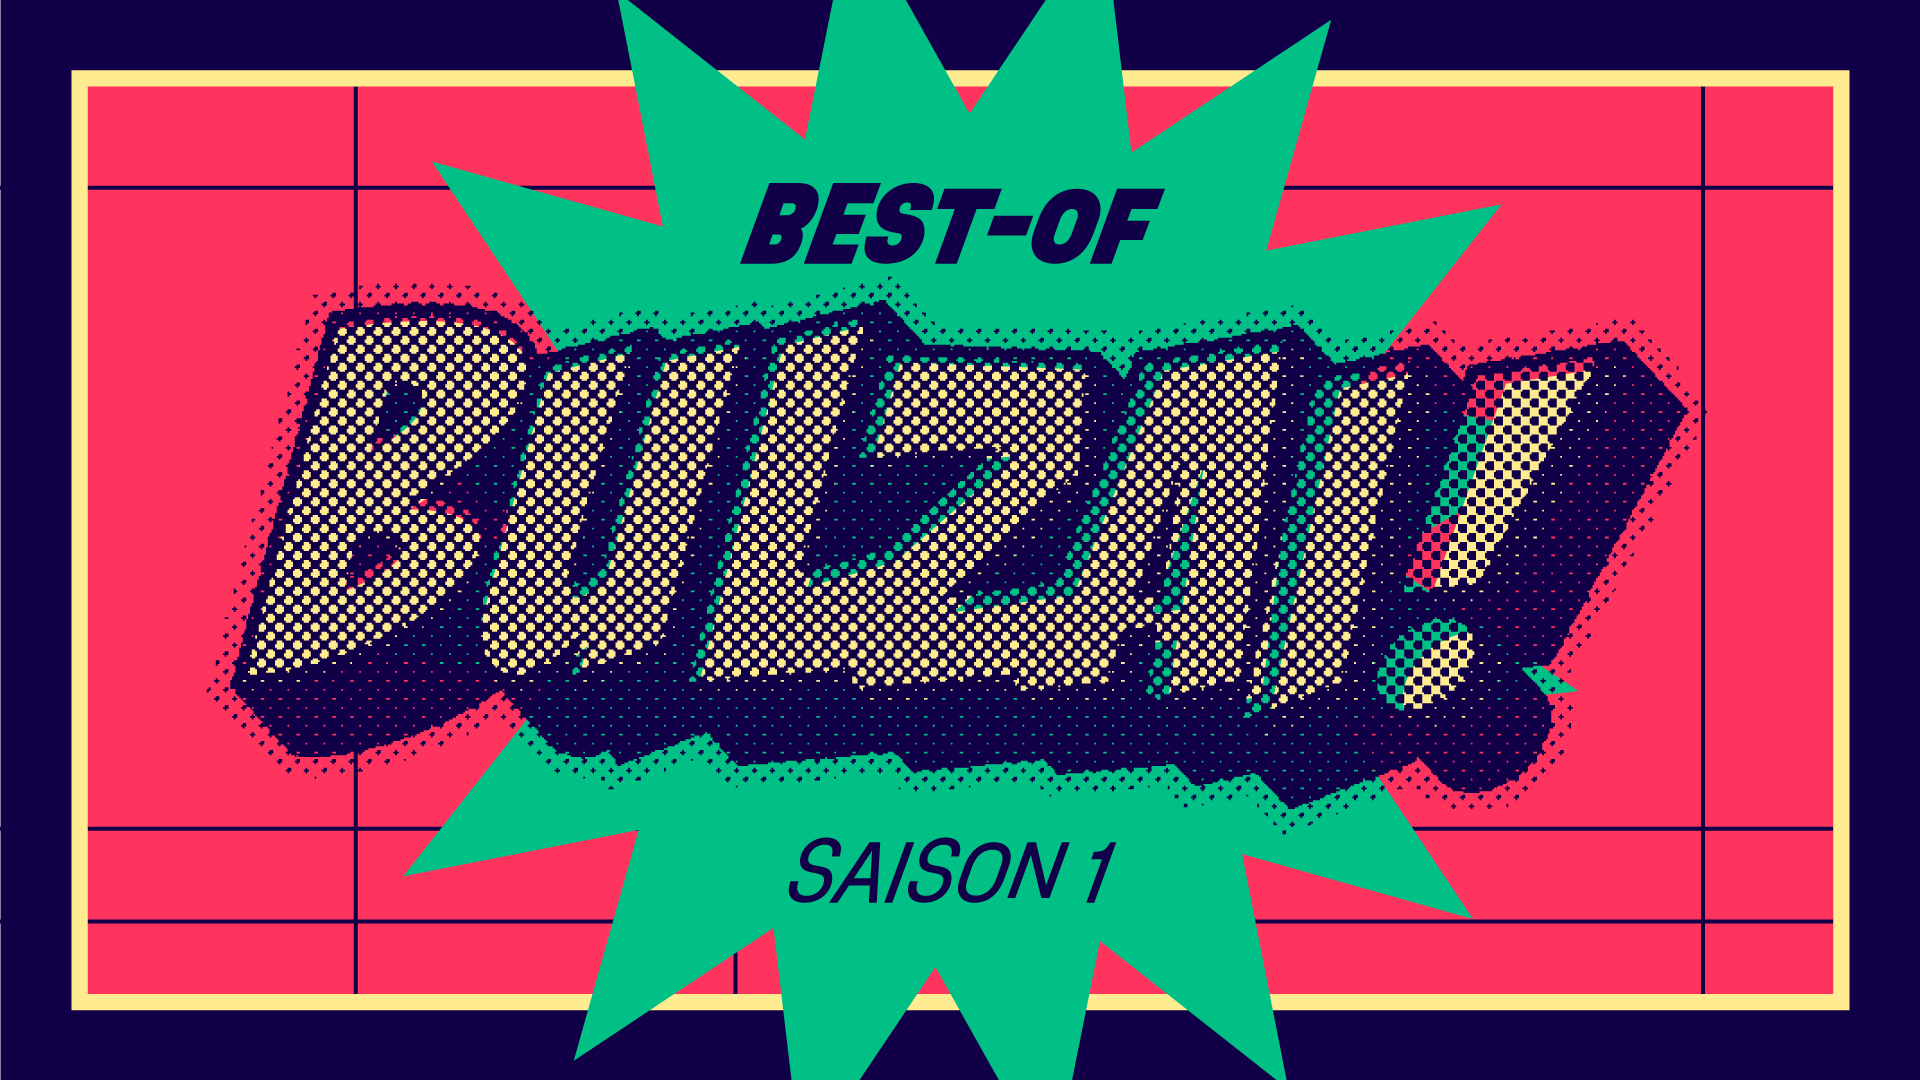 Le best-of Bulzai saison 1